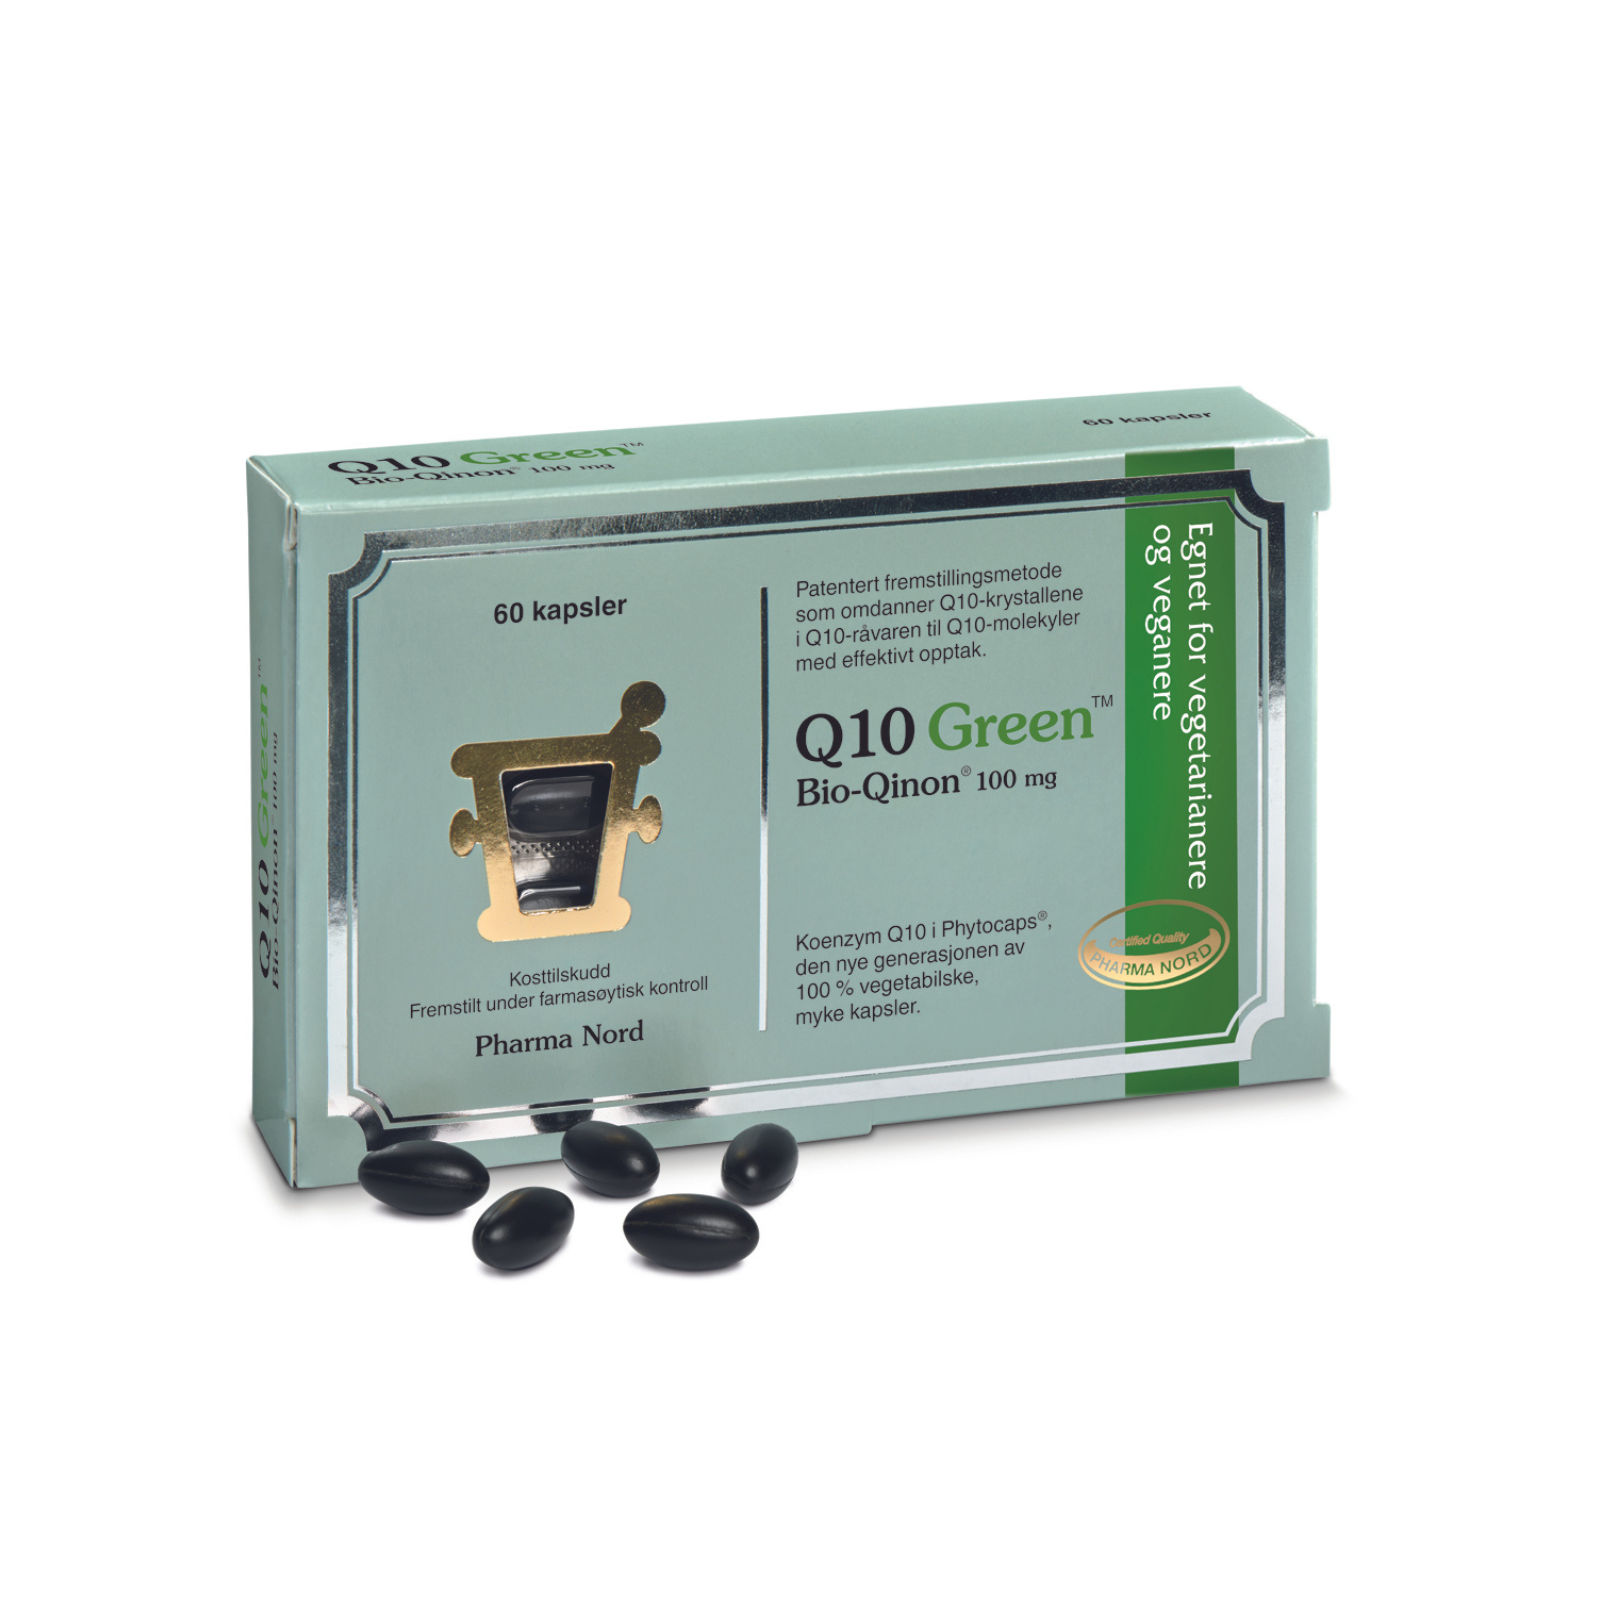 Bio-Qinon Q10 Green